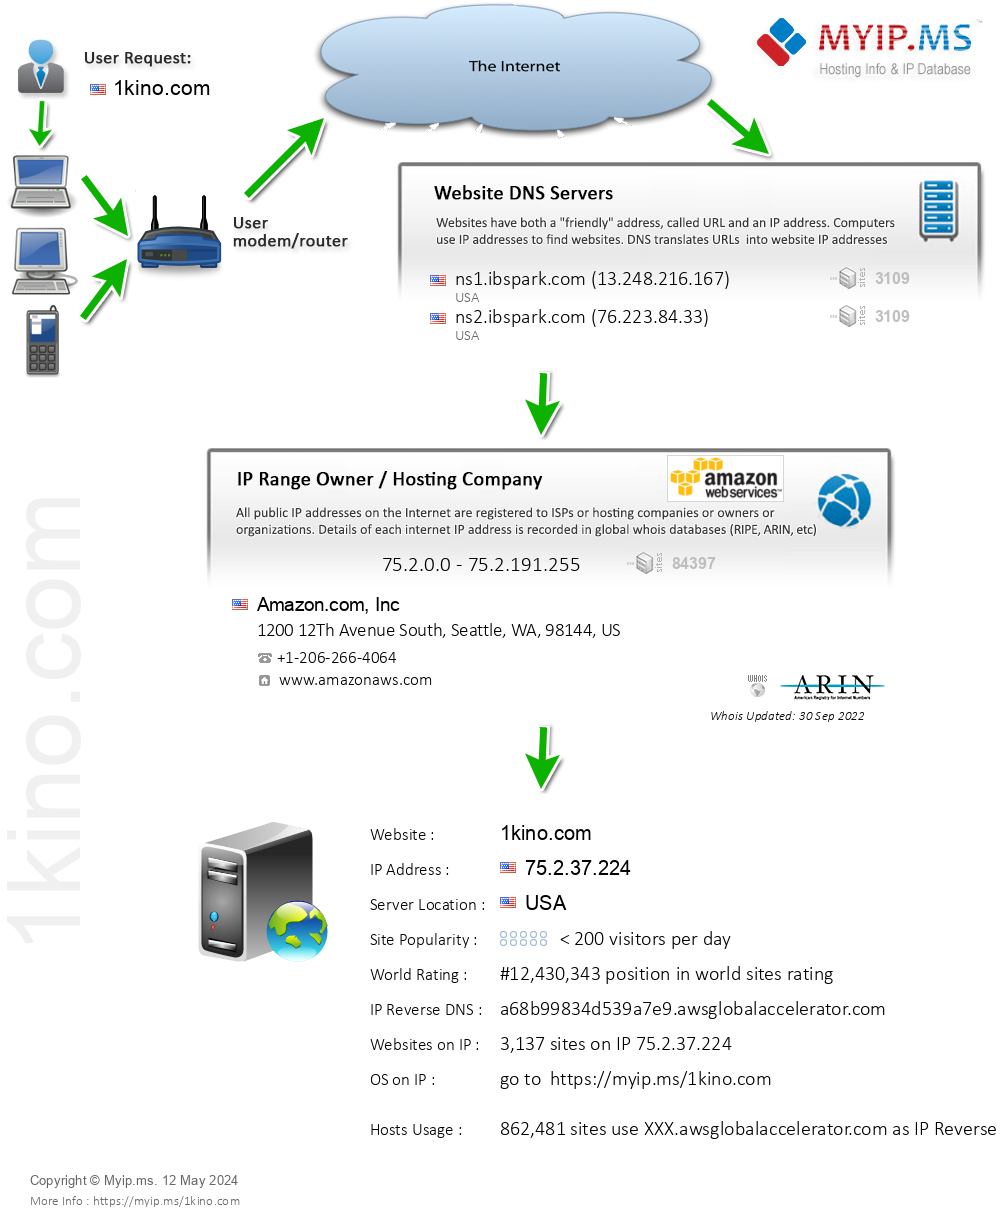 1kino.com - Website Hosting Visual IP Diagram